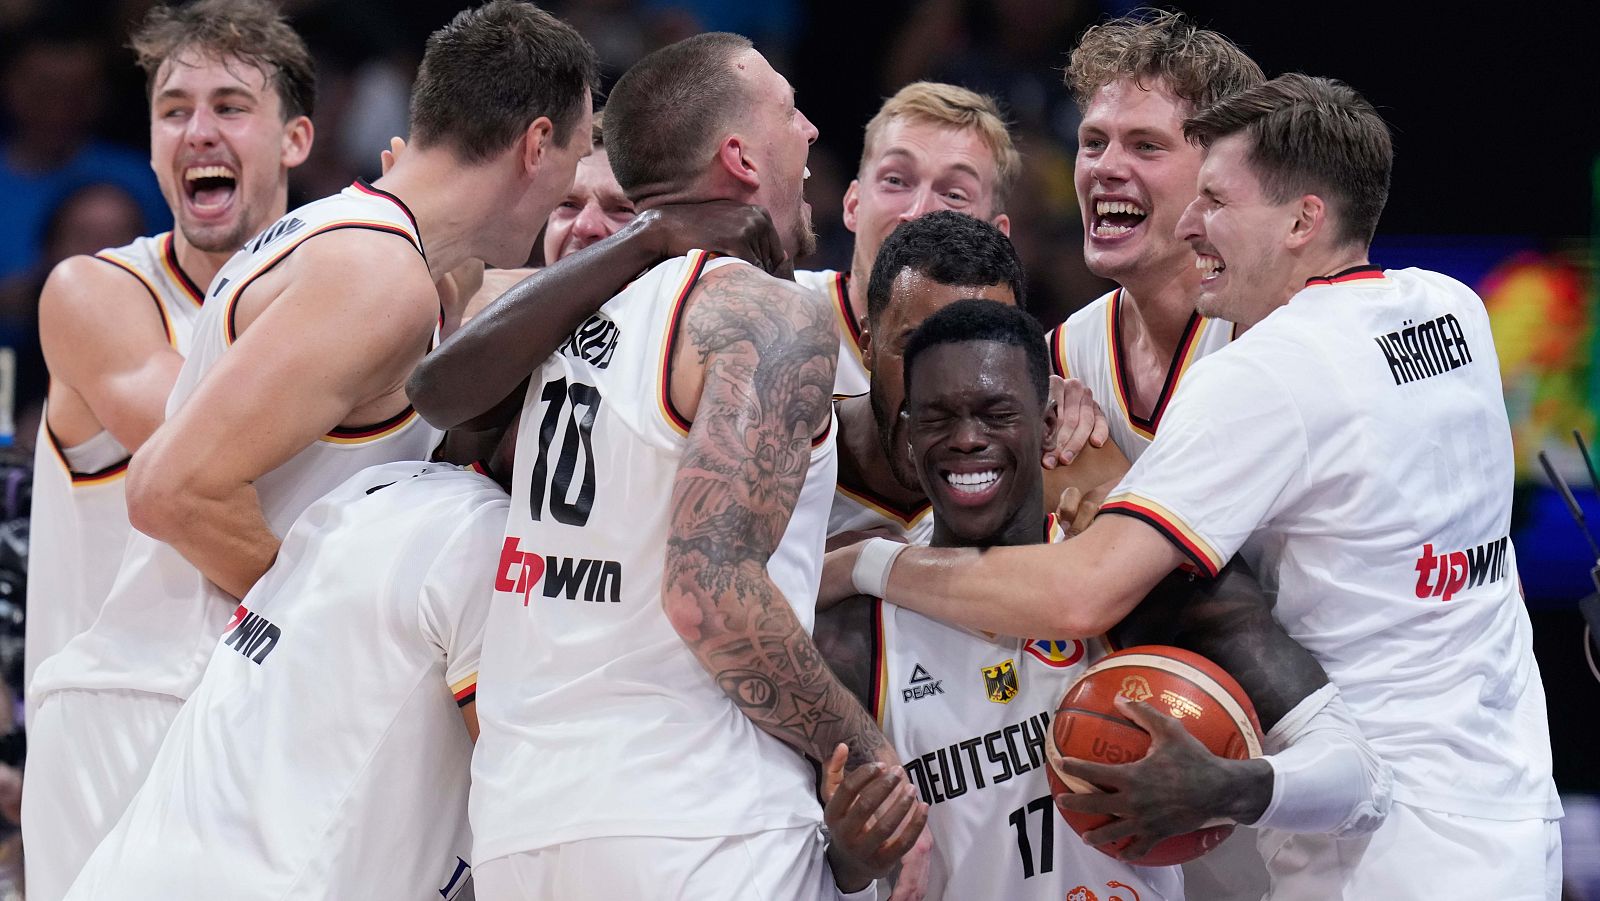 Alemania termina invicta y se corona campeona mundial de baloncesto